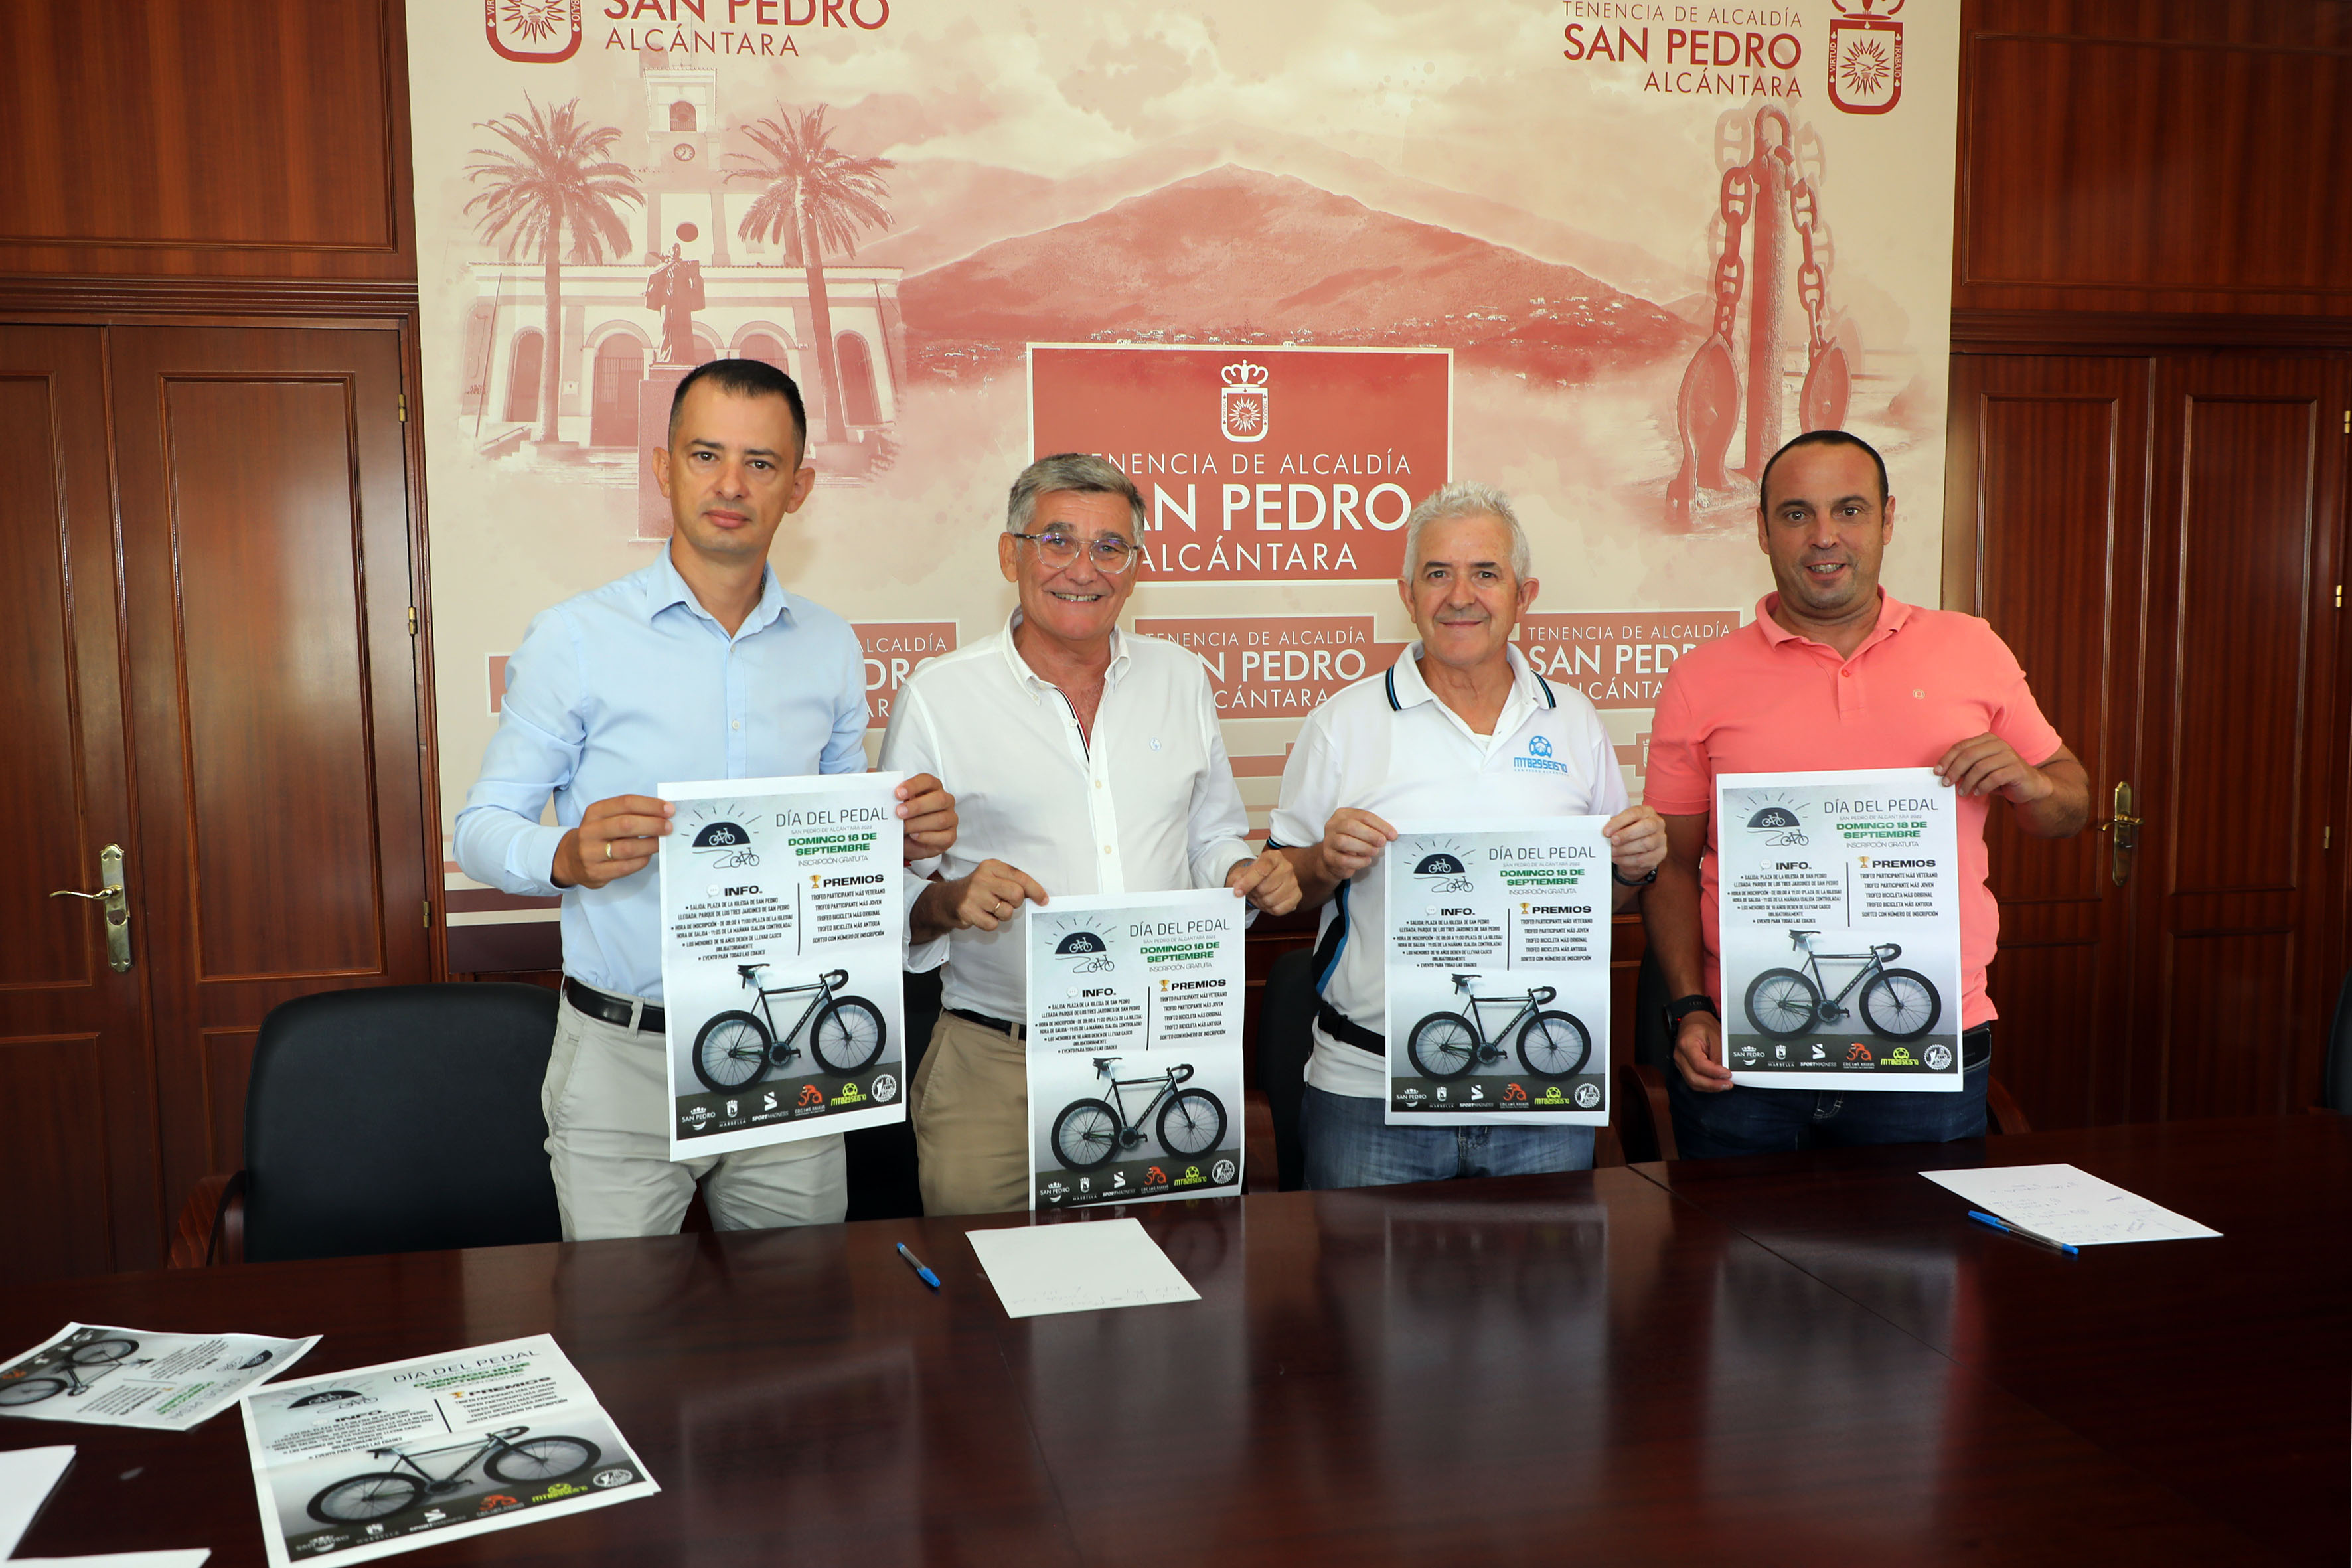 San Pedro Alcántara retomará el próximo domingo 18 de septiembre la celebración de su tradicional Día del Pedal, después de dos años de parón por la pandemia